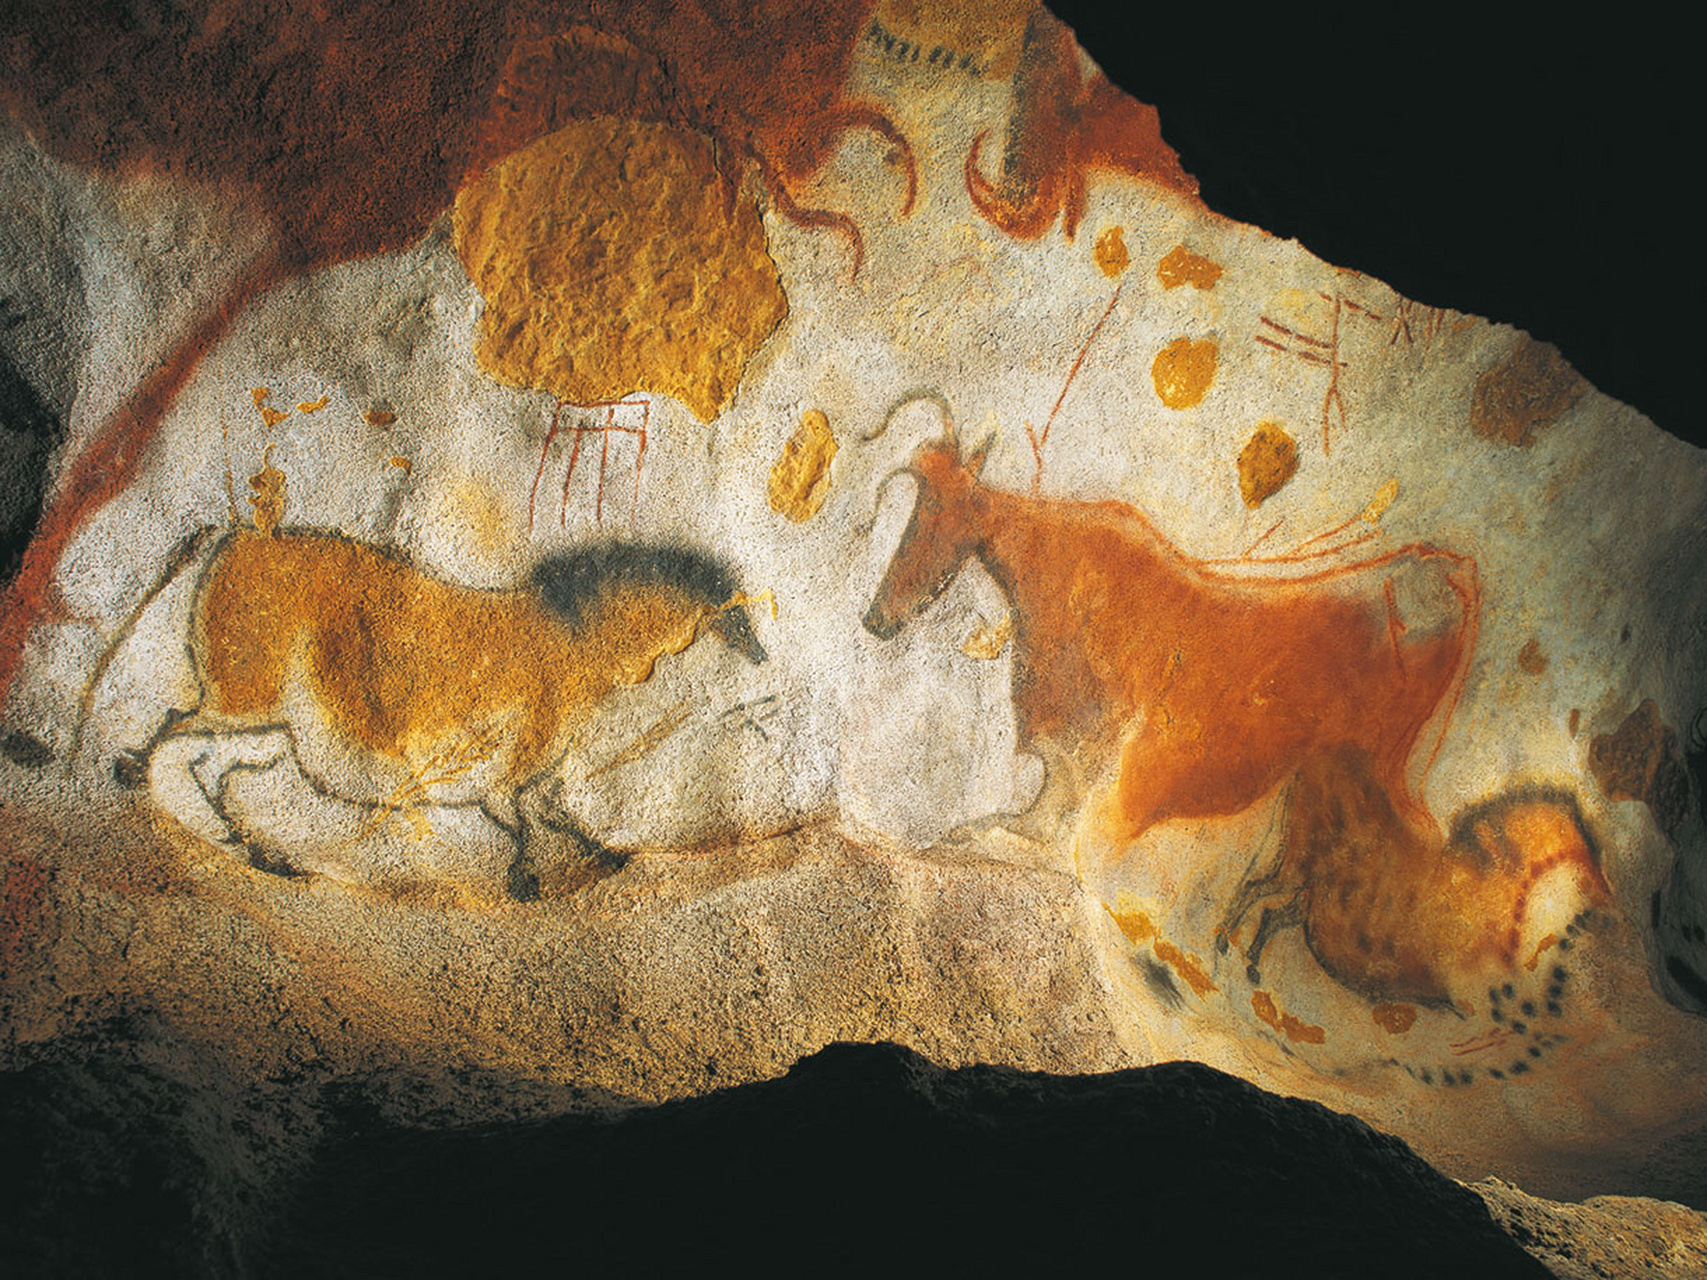 17000千年前的牛 拉斯科洞窟(法语:grotte de lascaux)壁画,位于法国